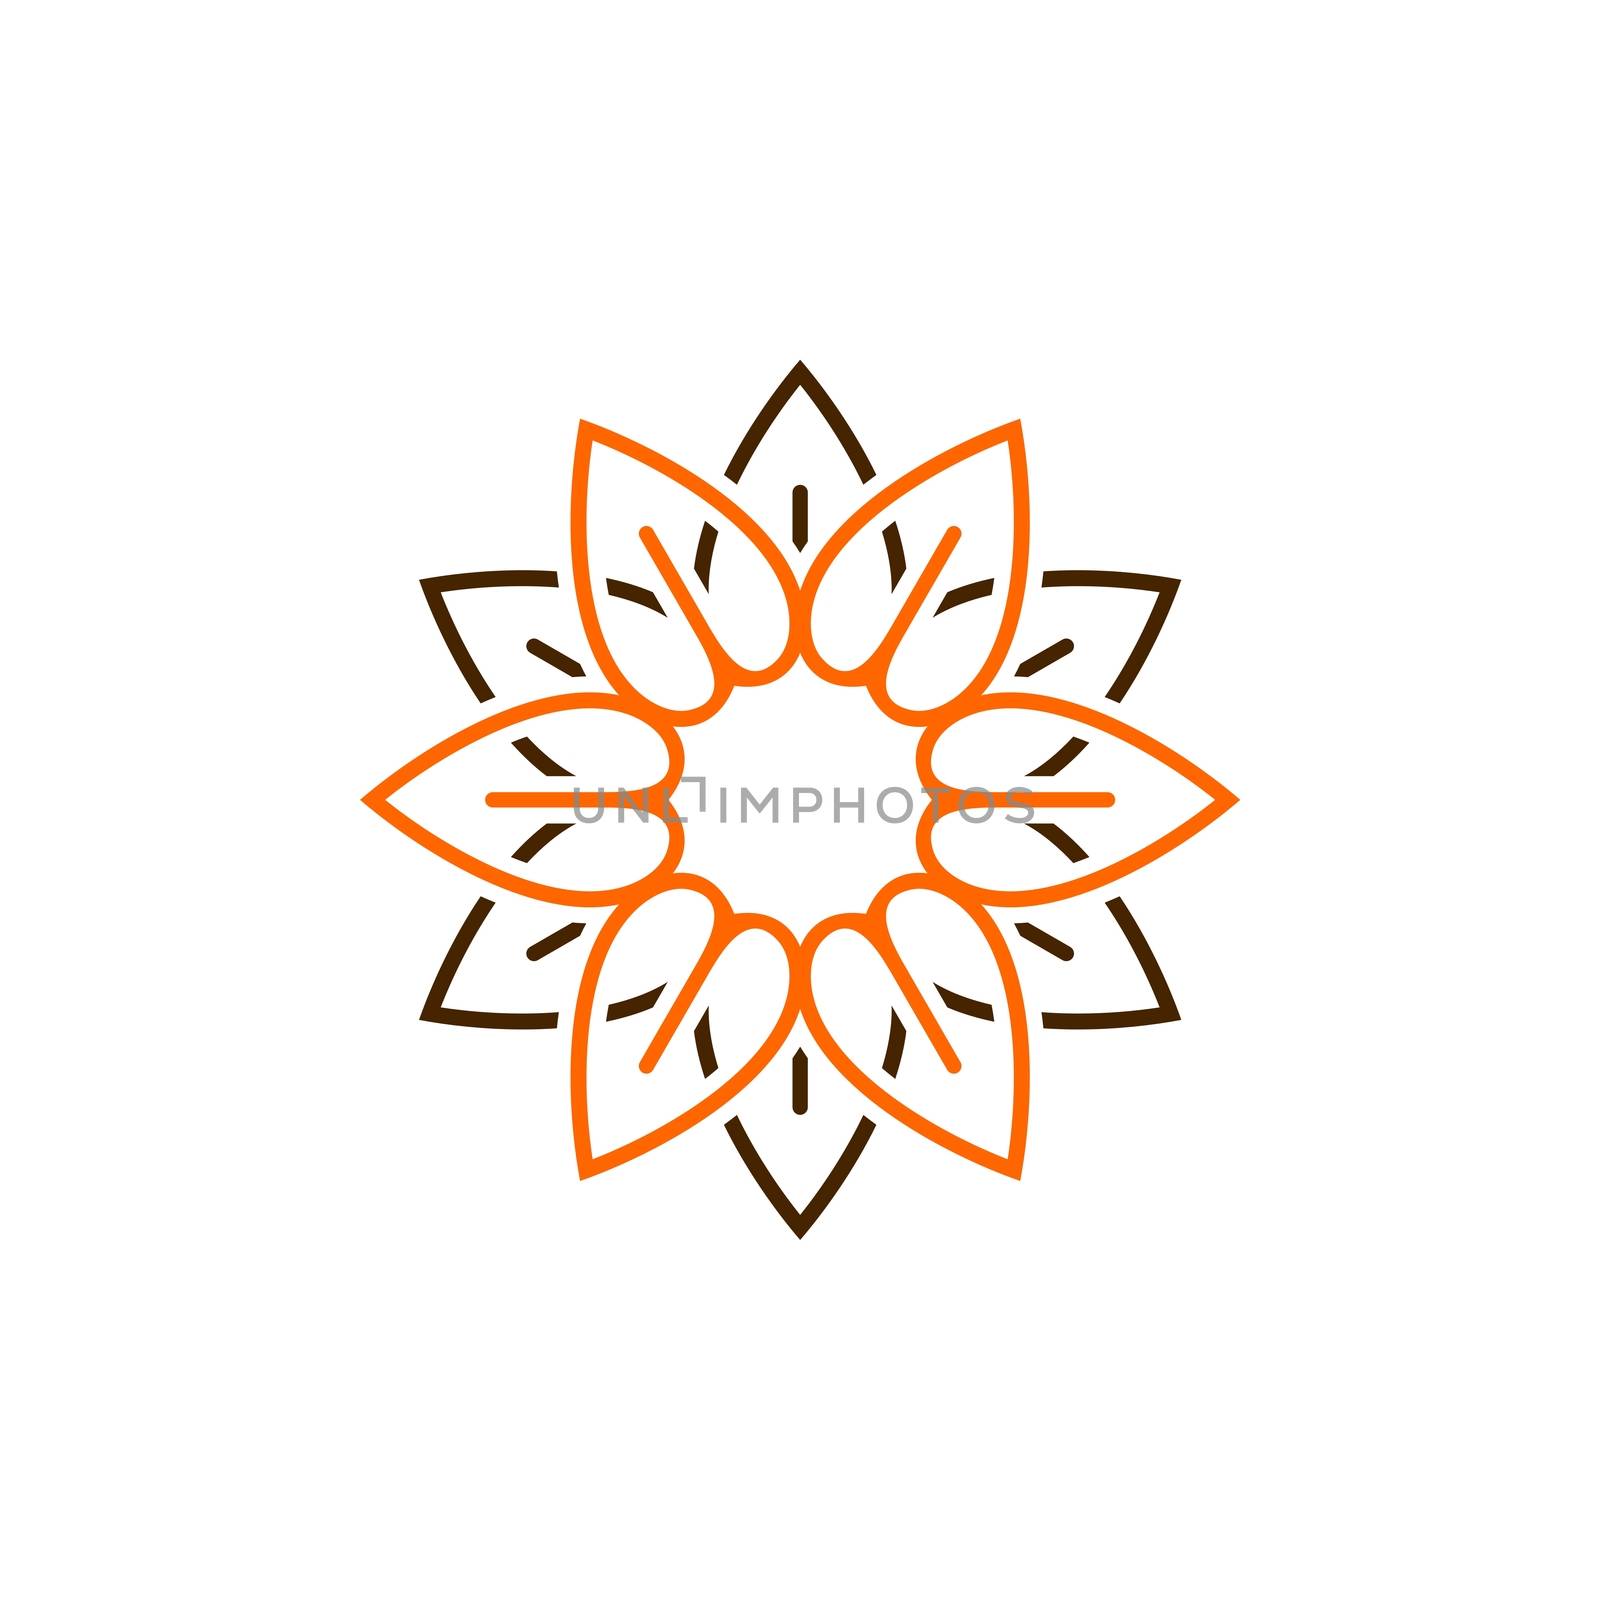 Orange Petals Flower Logo Template Illustration Design EPS 10